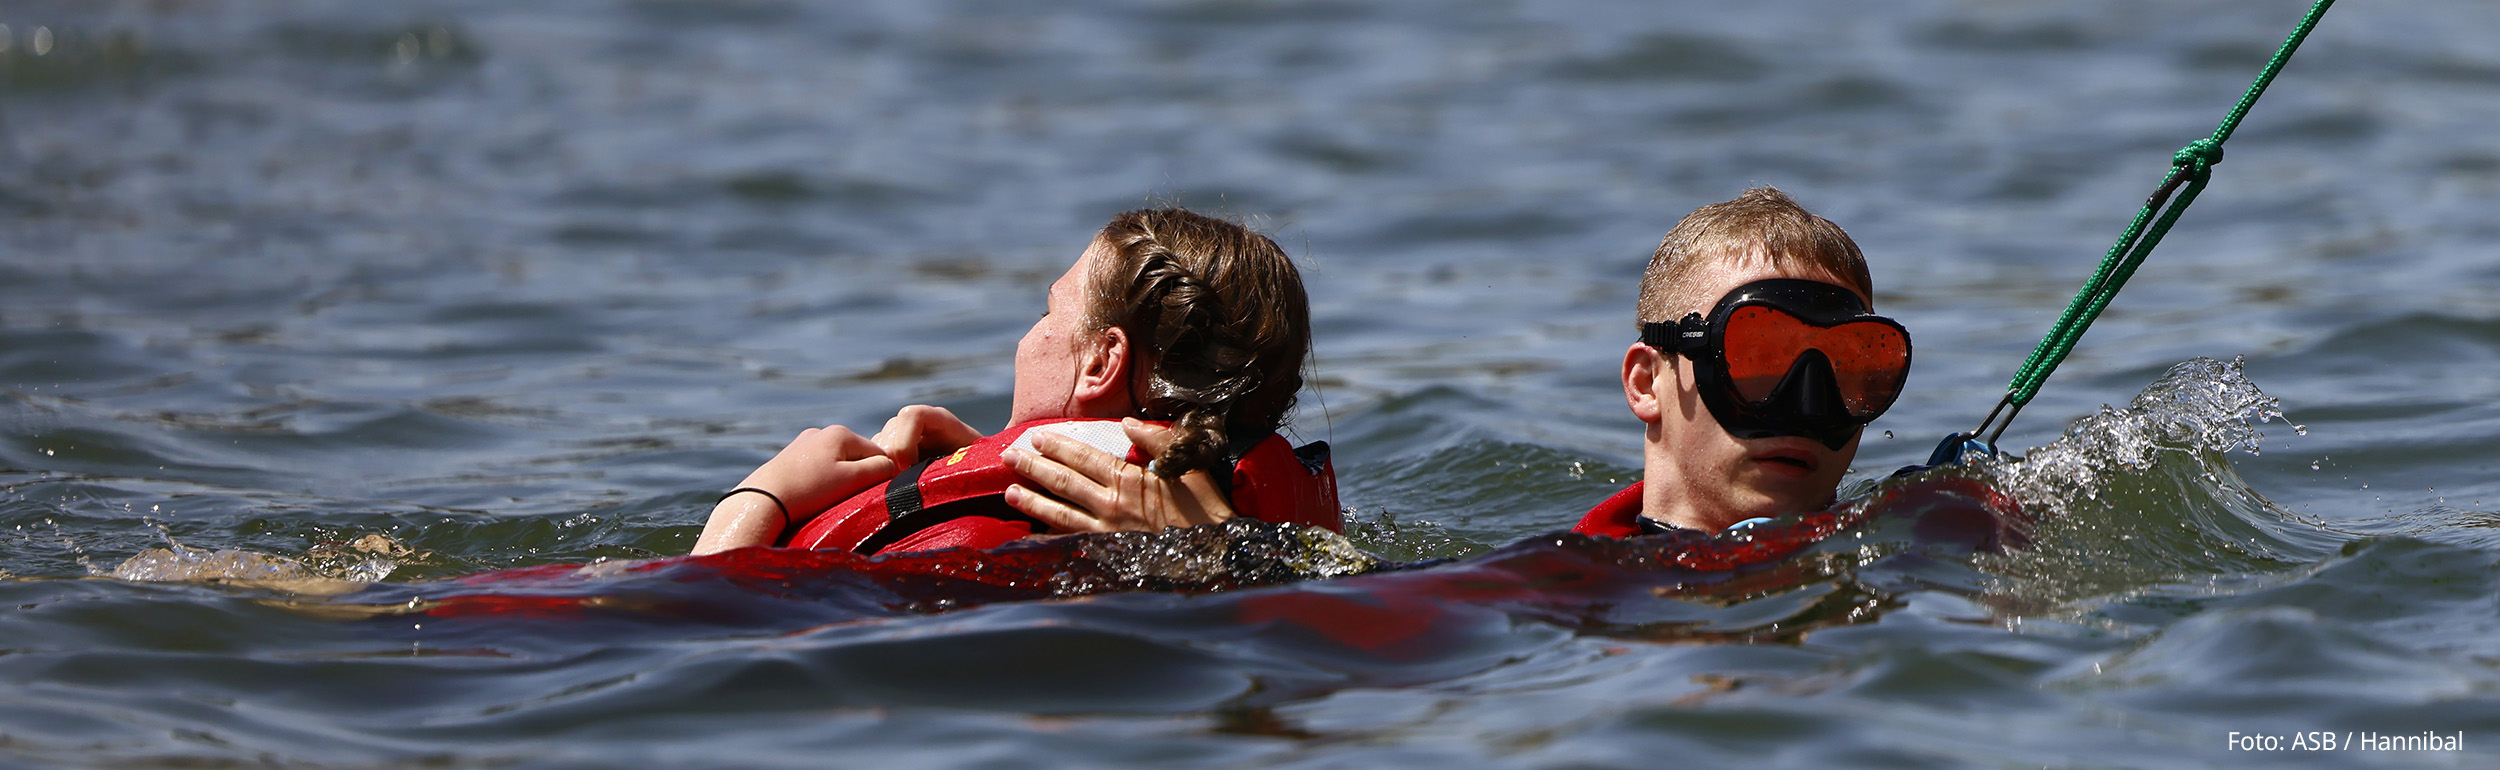 Rettungsschwimmer rettet Schwimmerin bei Übung